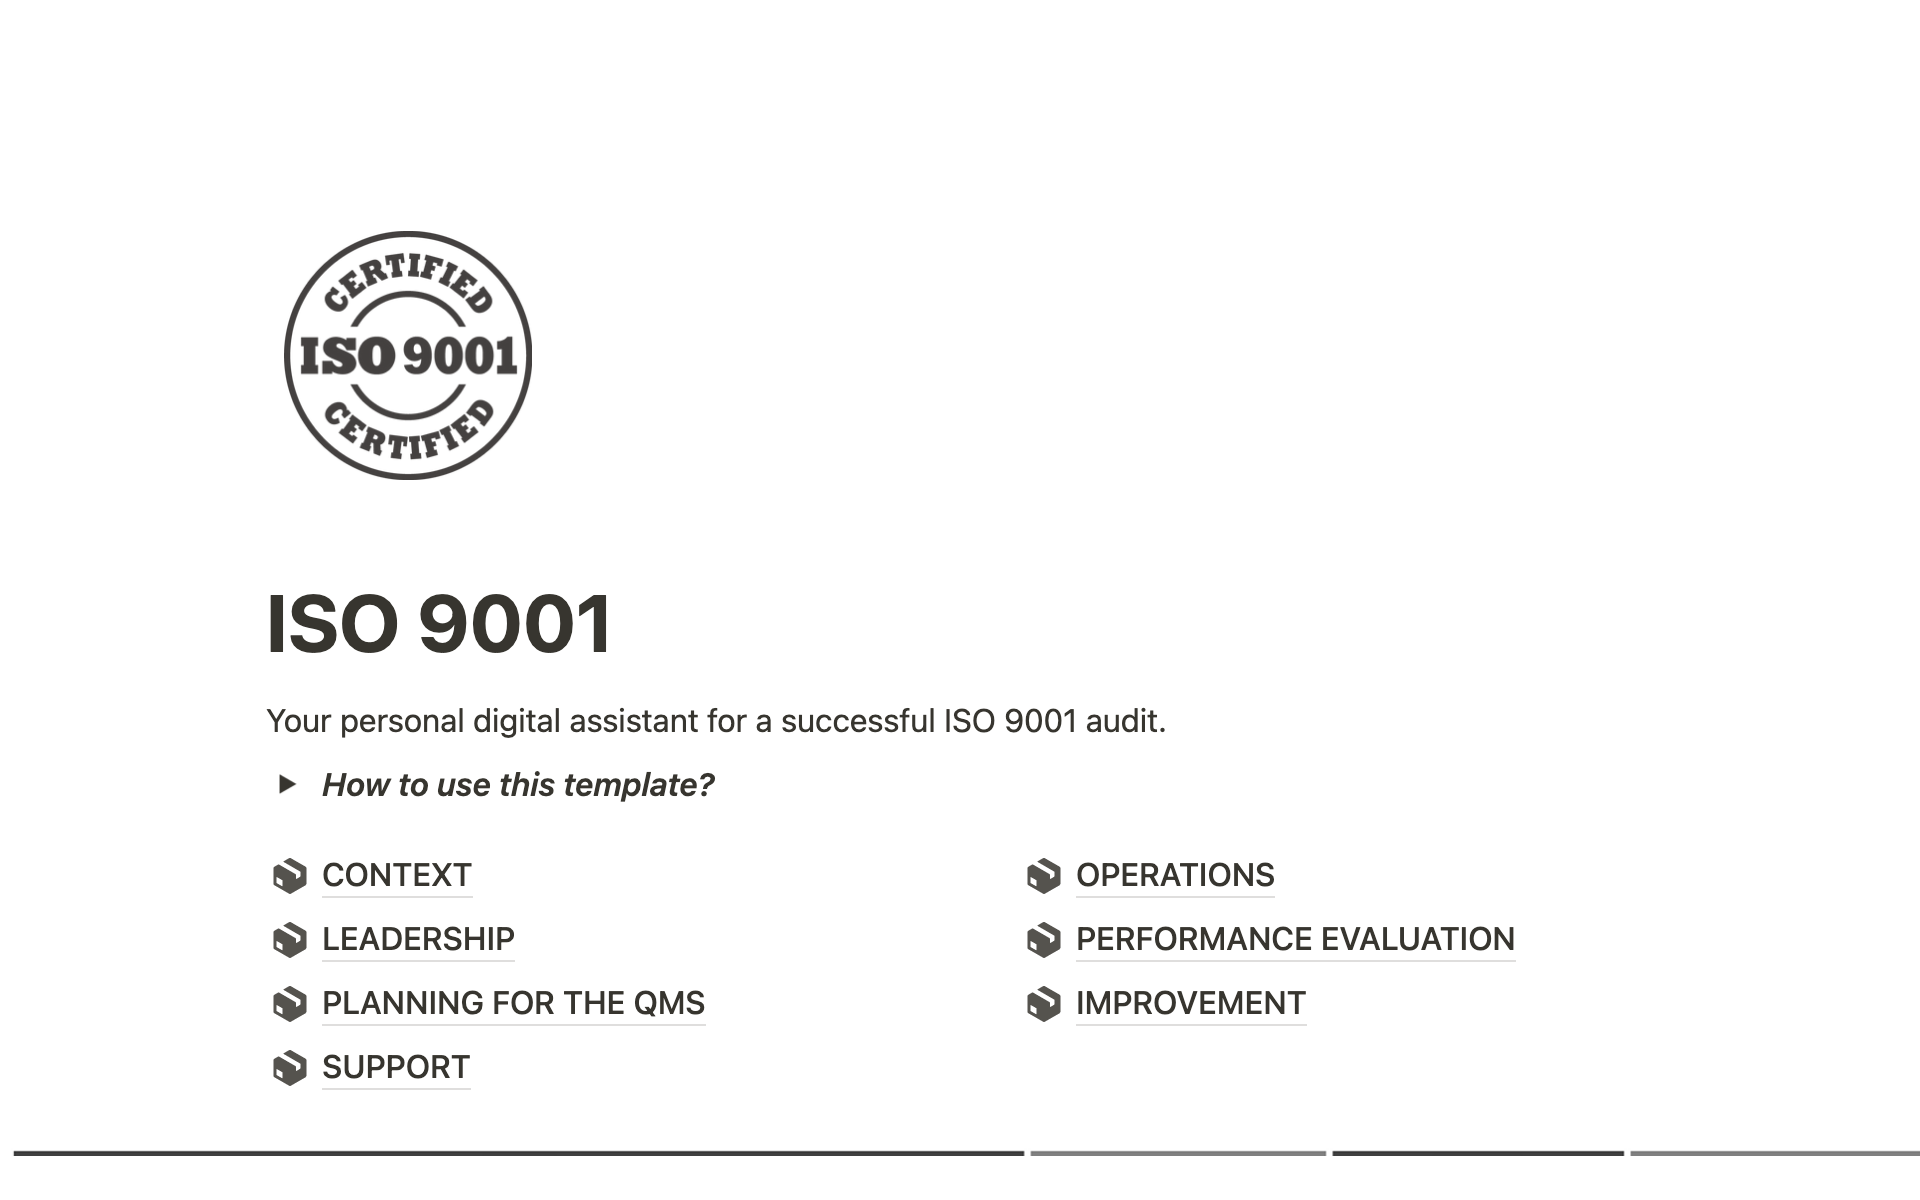 Vista previa de plantilla para ISO 9001 - audit assistant